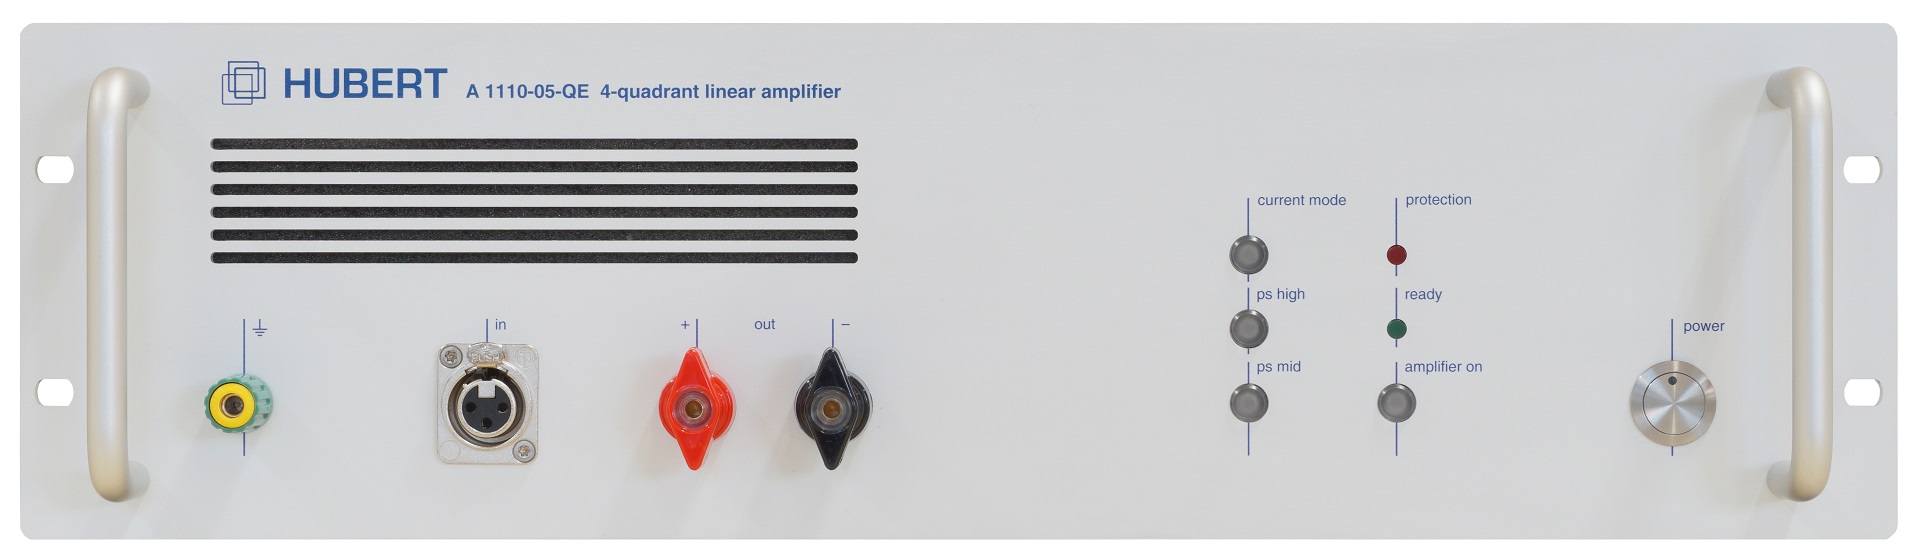 HUBERT A 1110-05-QE linear amplifier